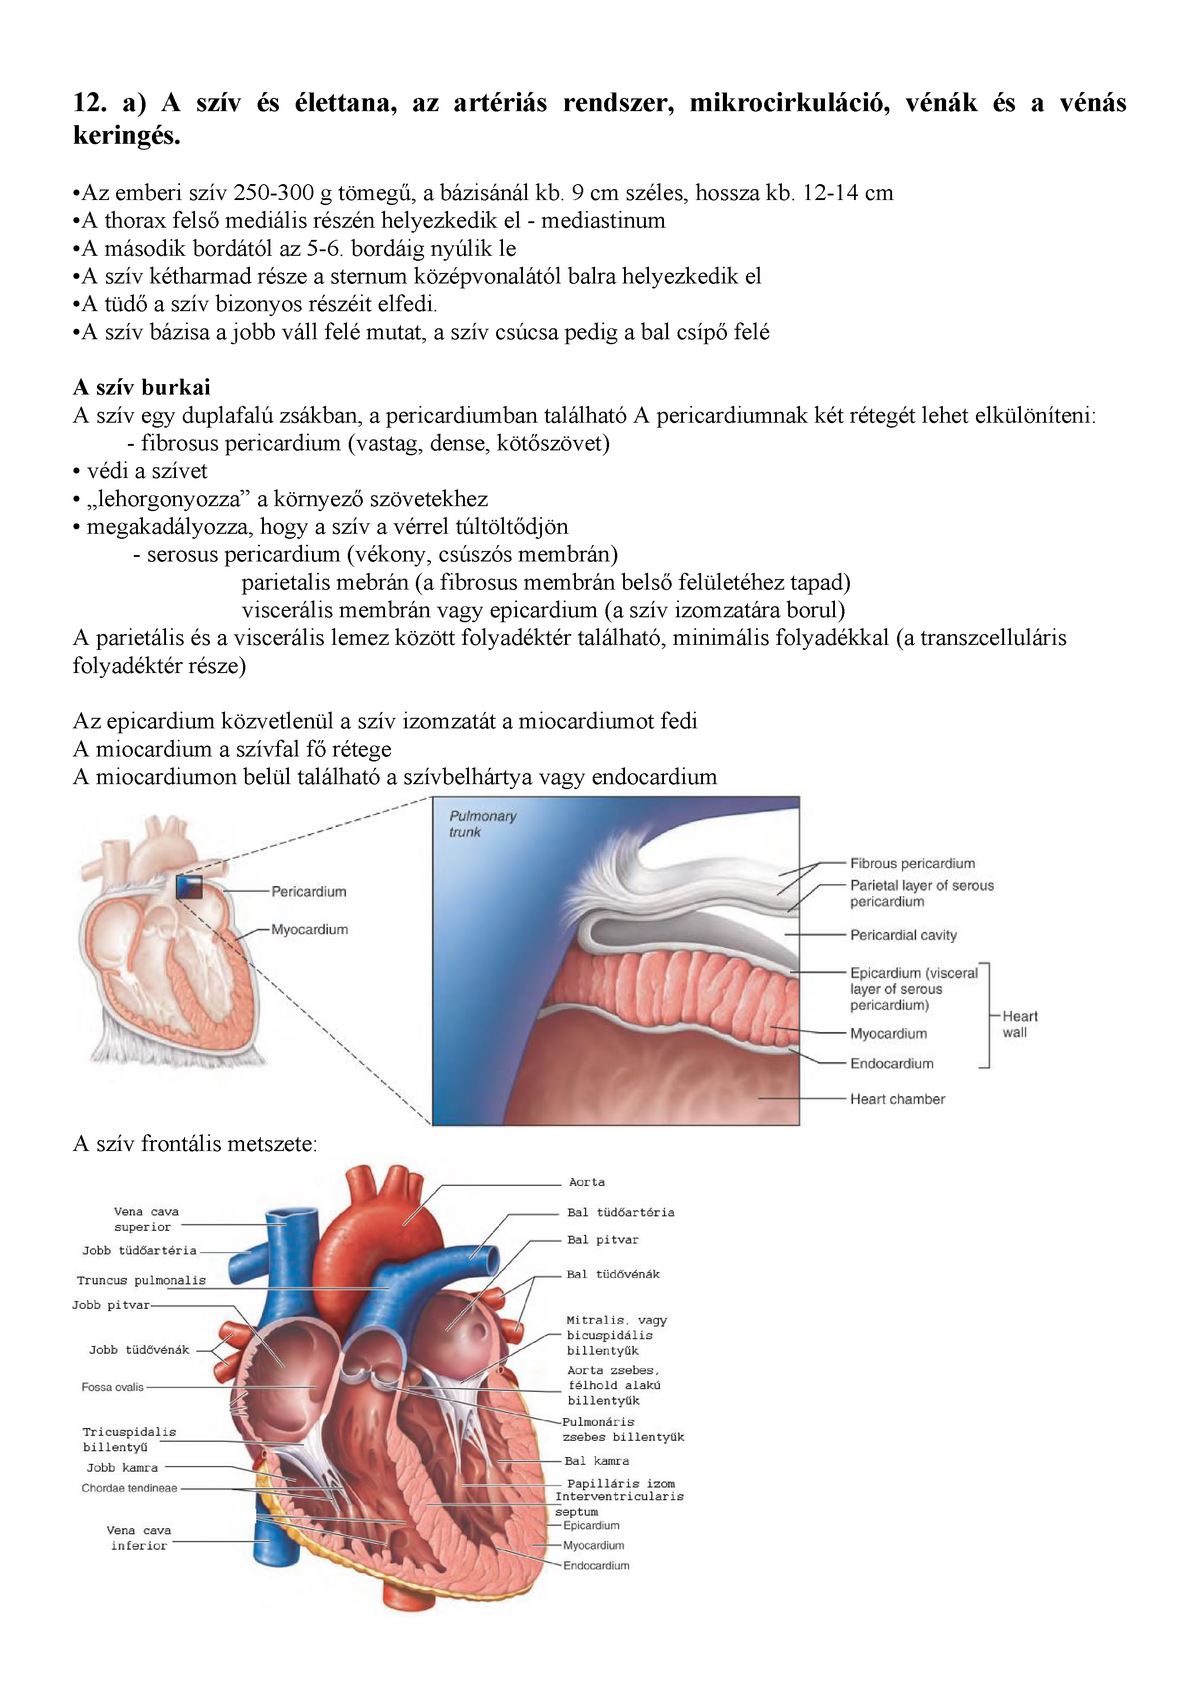 angiogram arteriogram szív egészsége vízkeményedés magas vérnyomás esetén